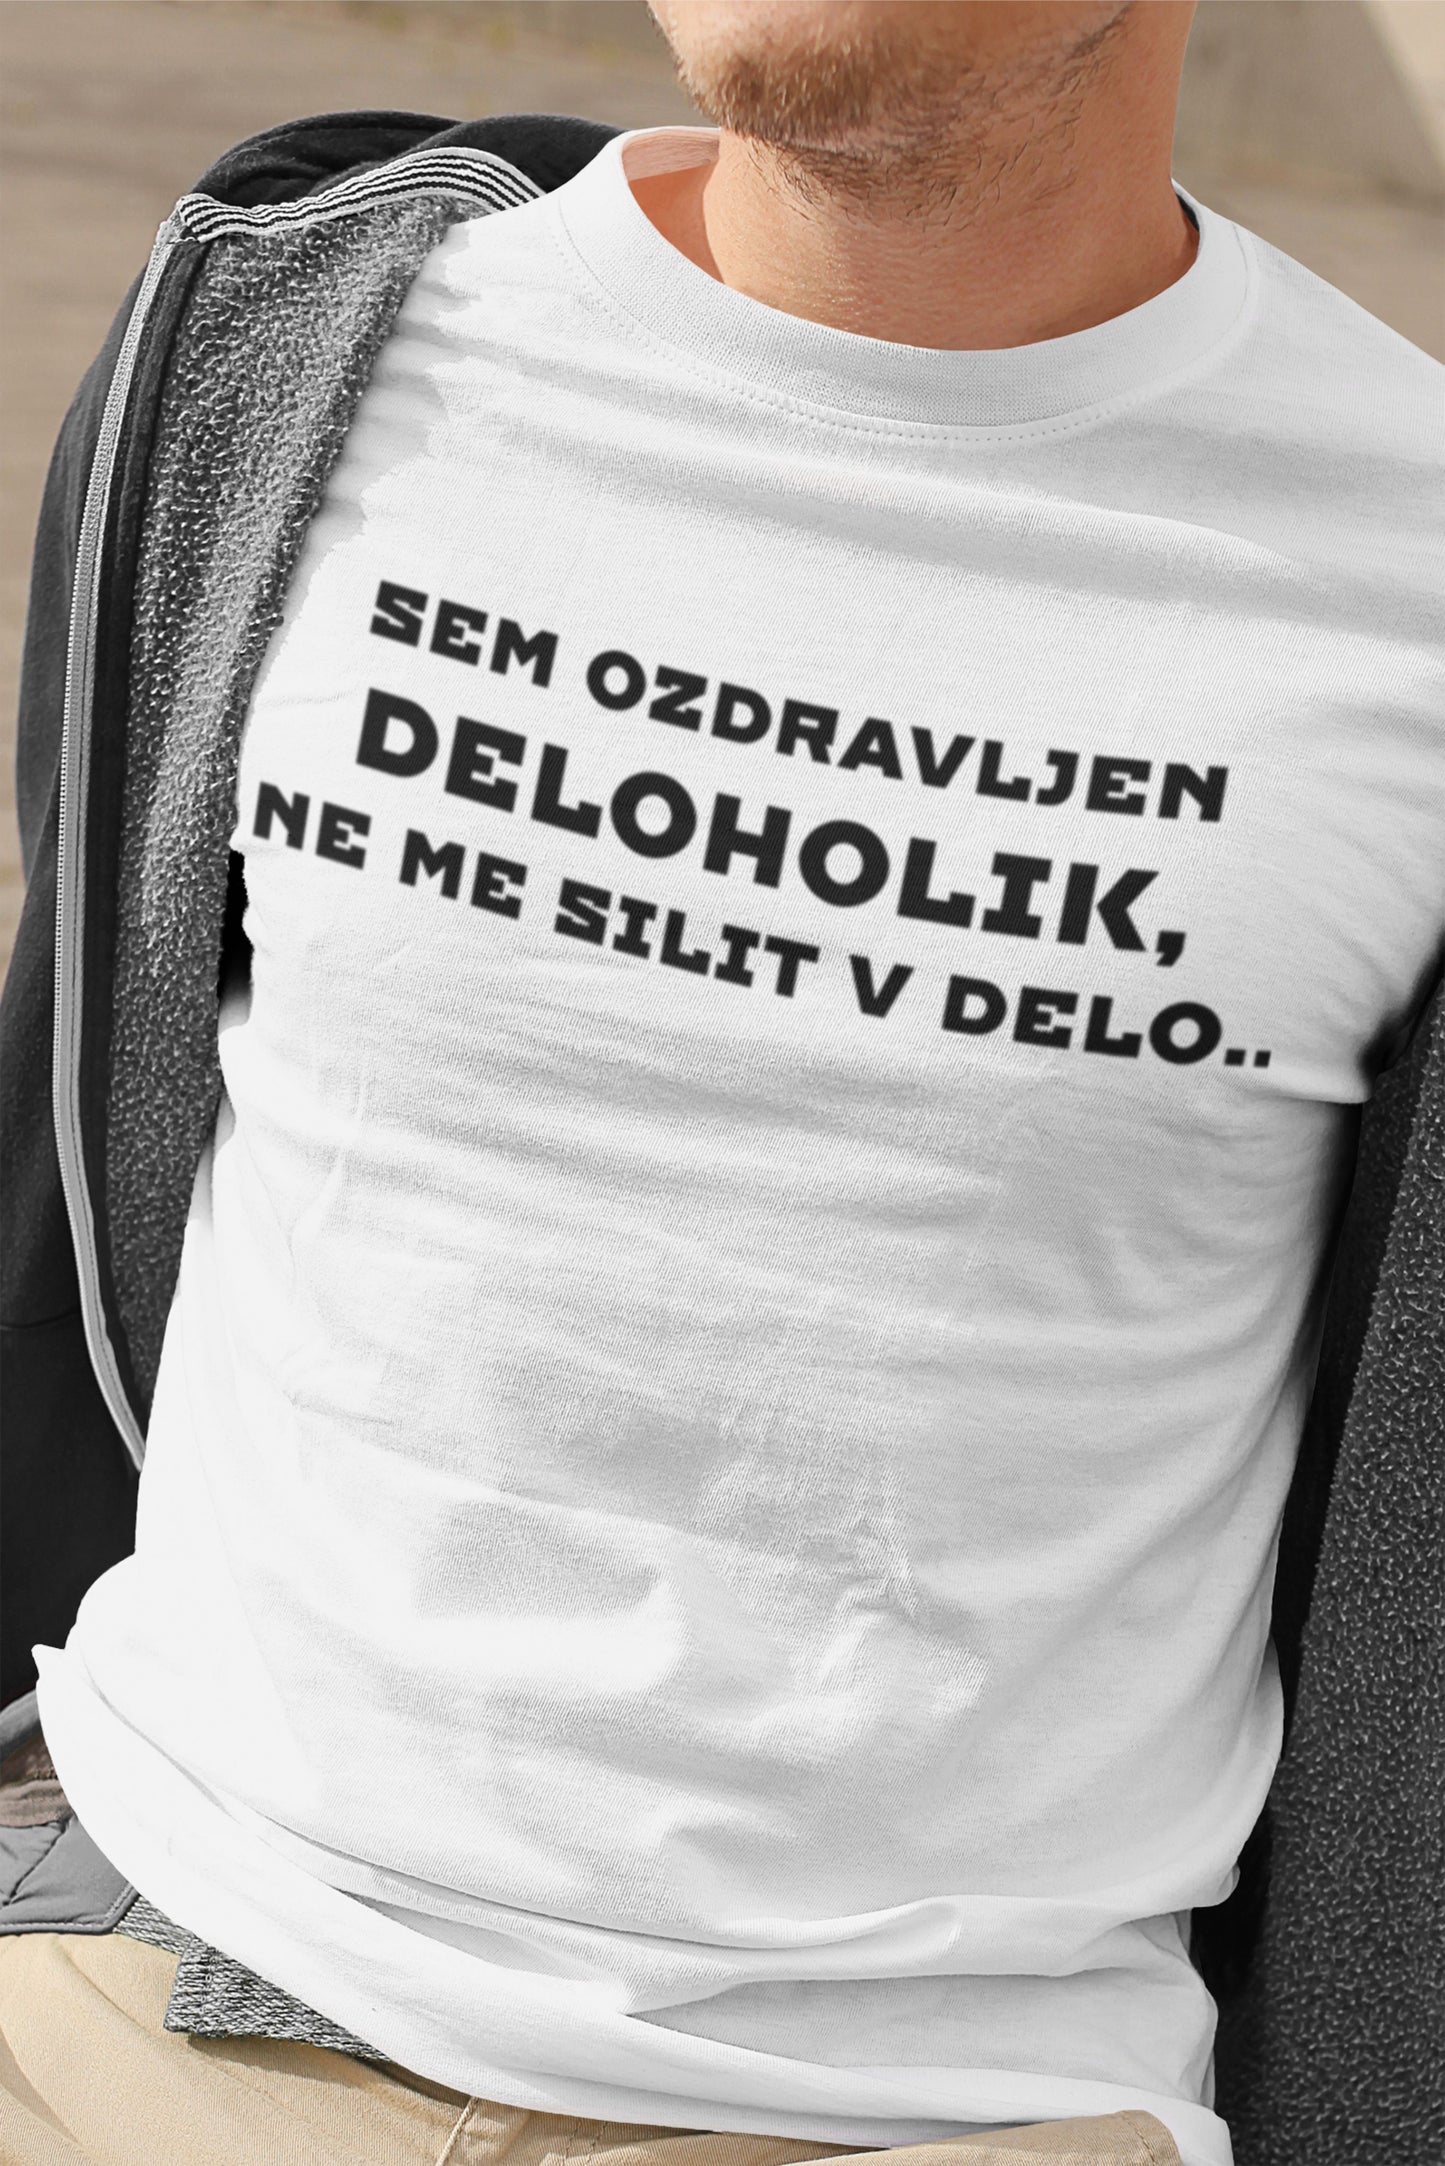 Majica-Sem Ozdravljen Deloholik Ne Me Silit V Delo